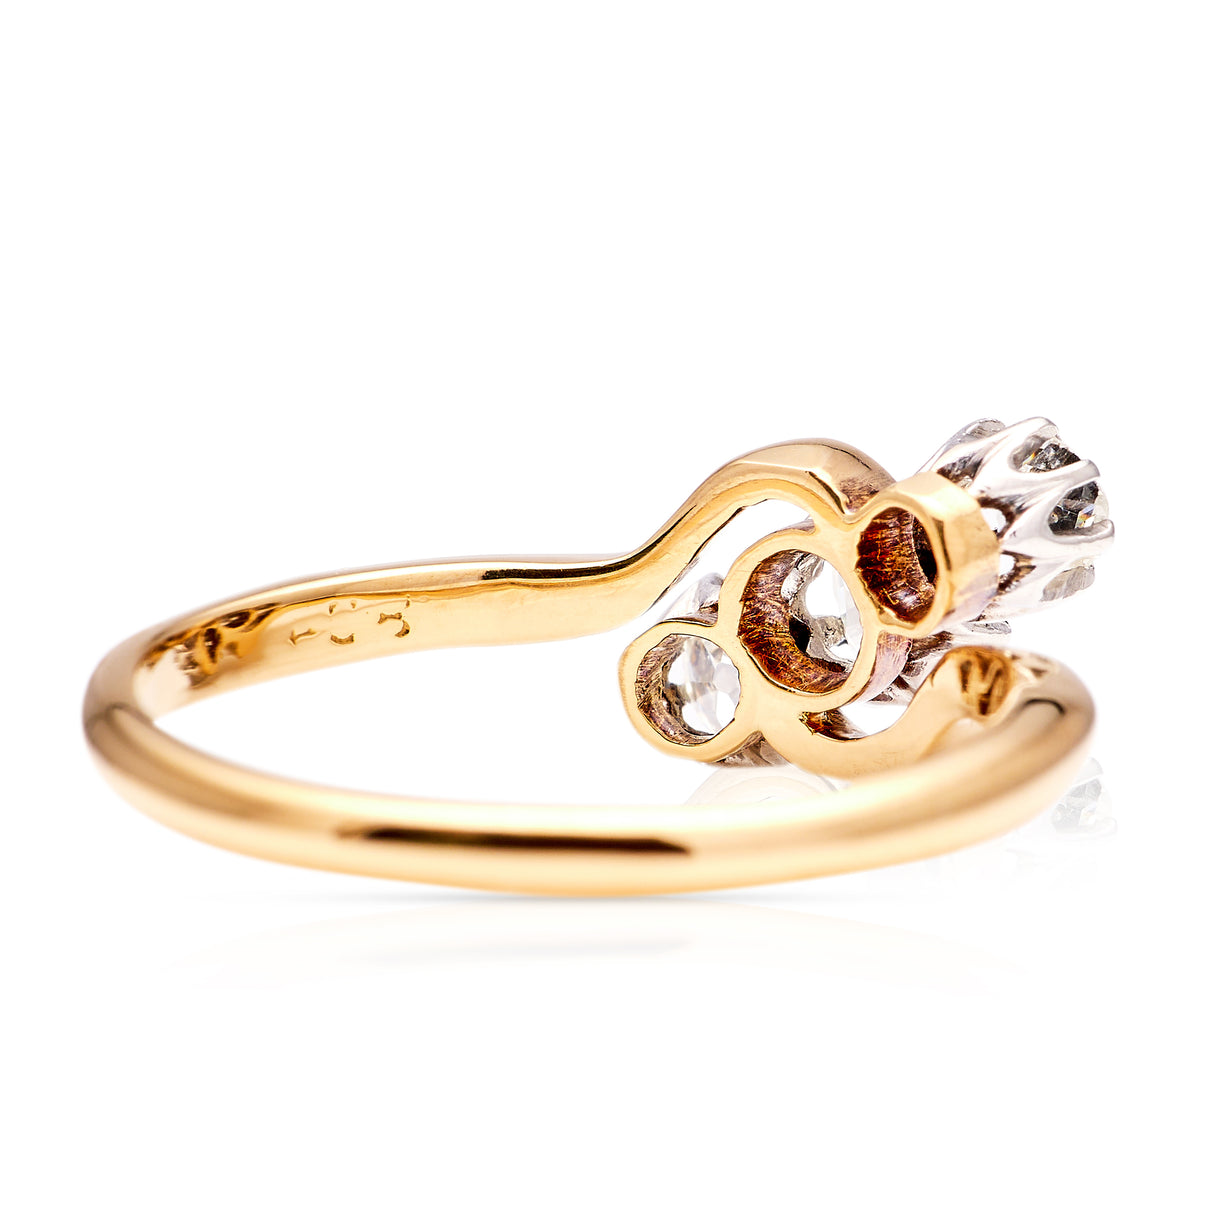 Antique, Edwardian three stone diamond engagement ring